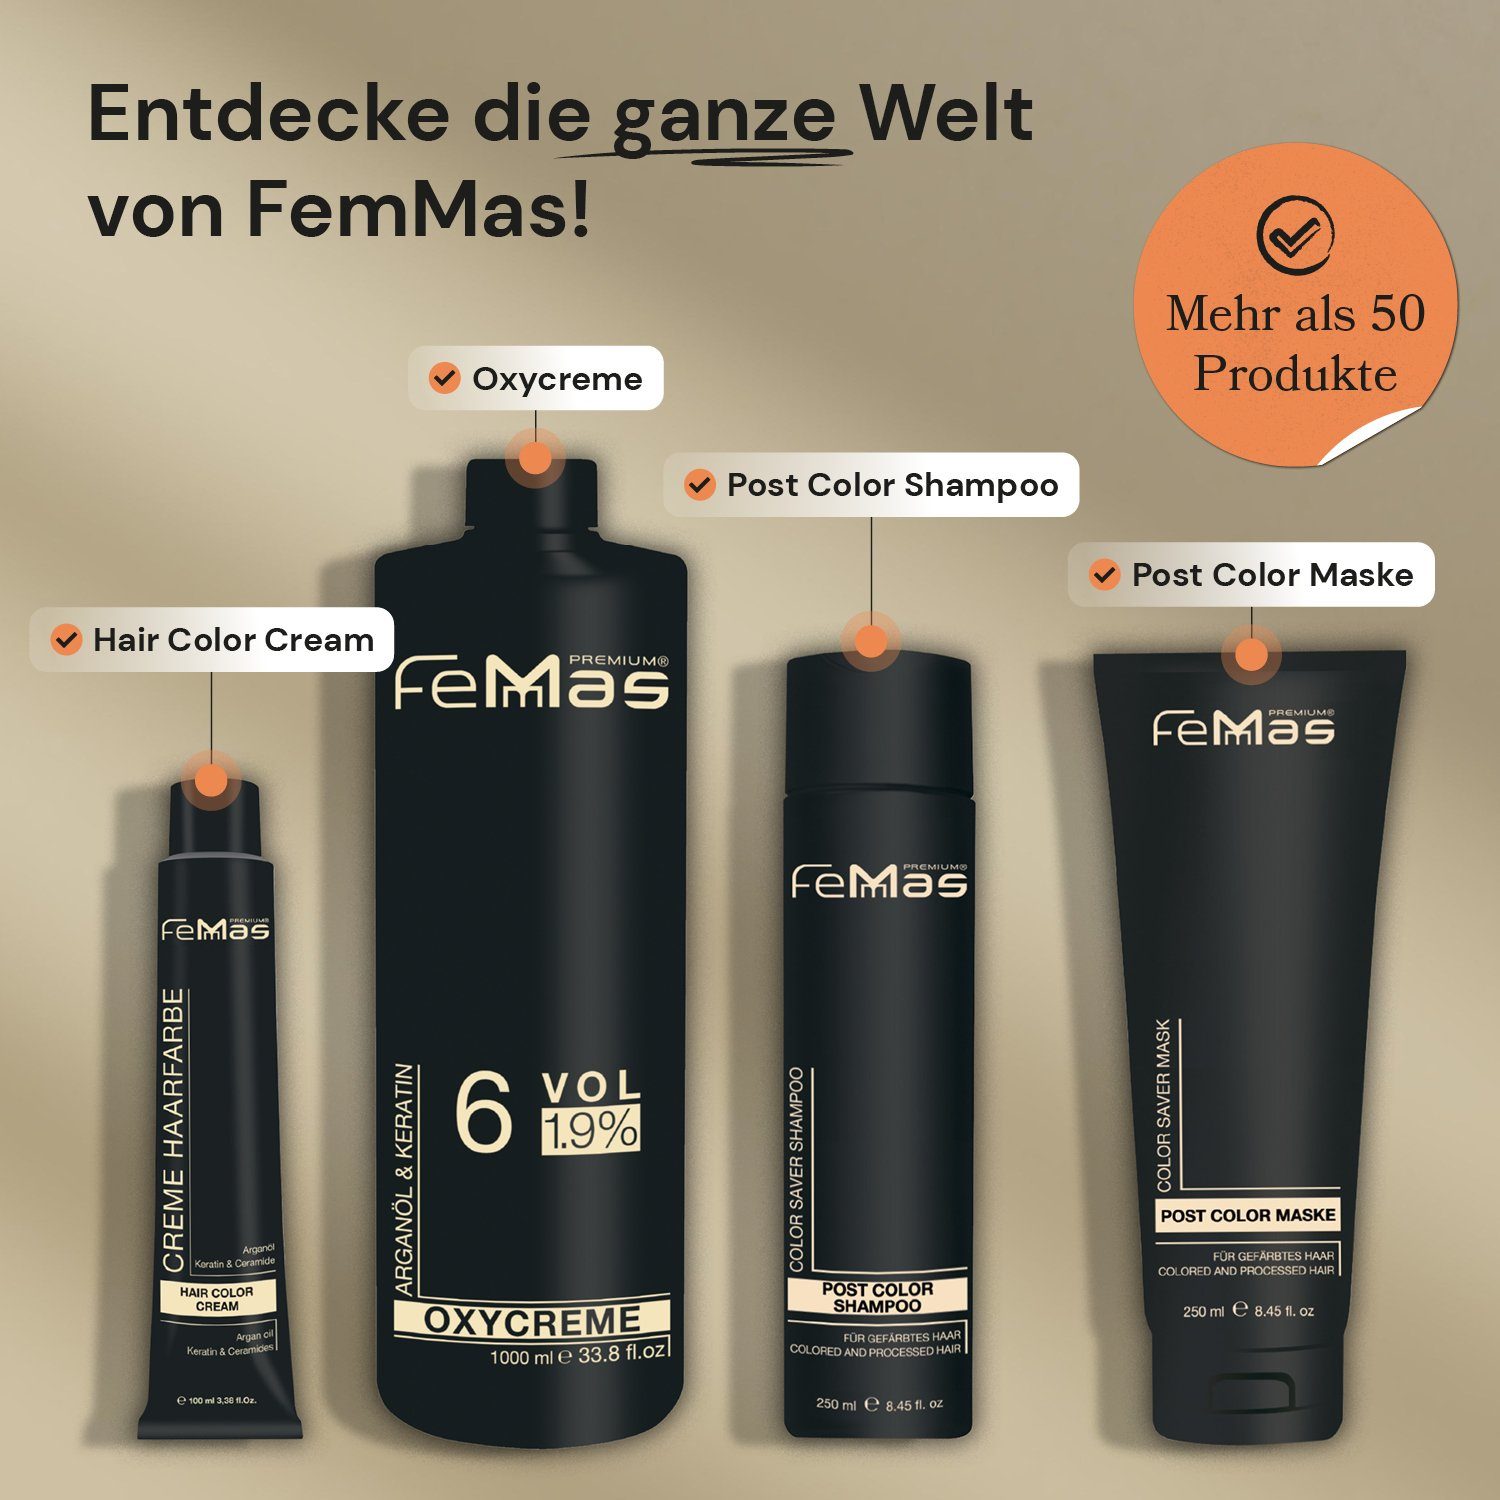 Femmas Premium Haarpflege-Set Color Maske Color Saver 250ml Saver + FemMas 250ml Shampoo